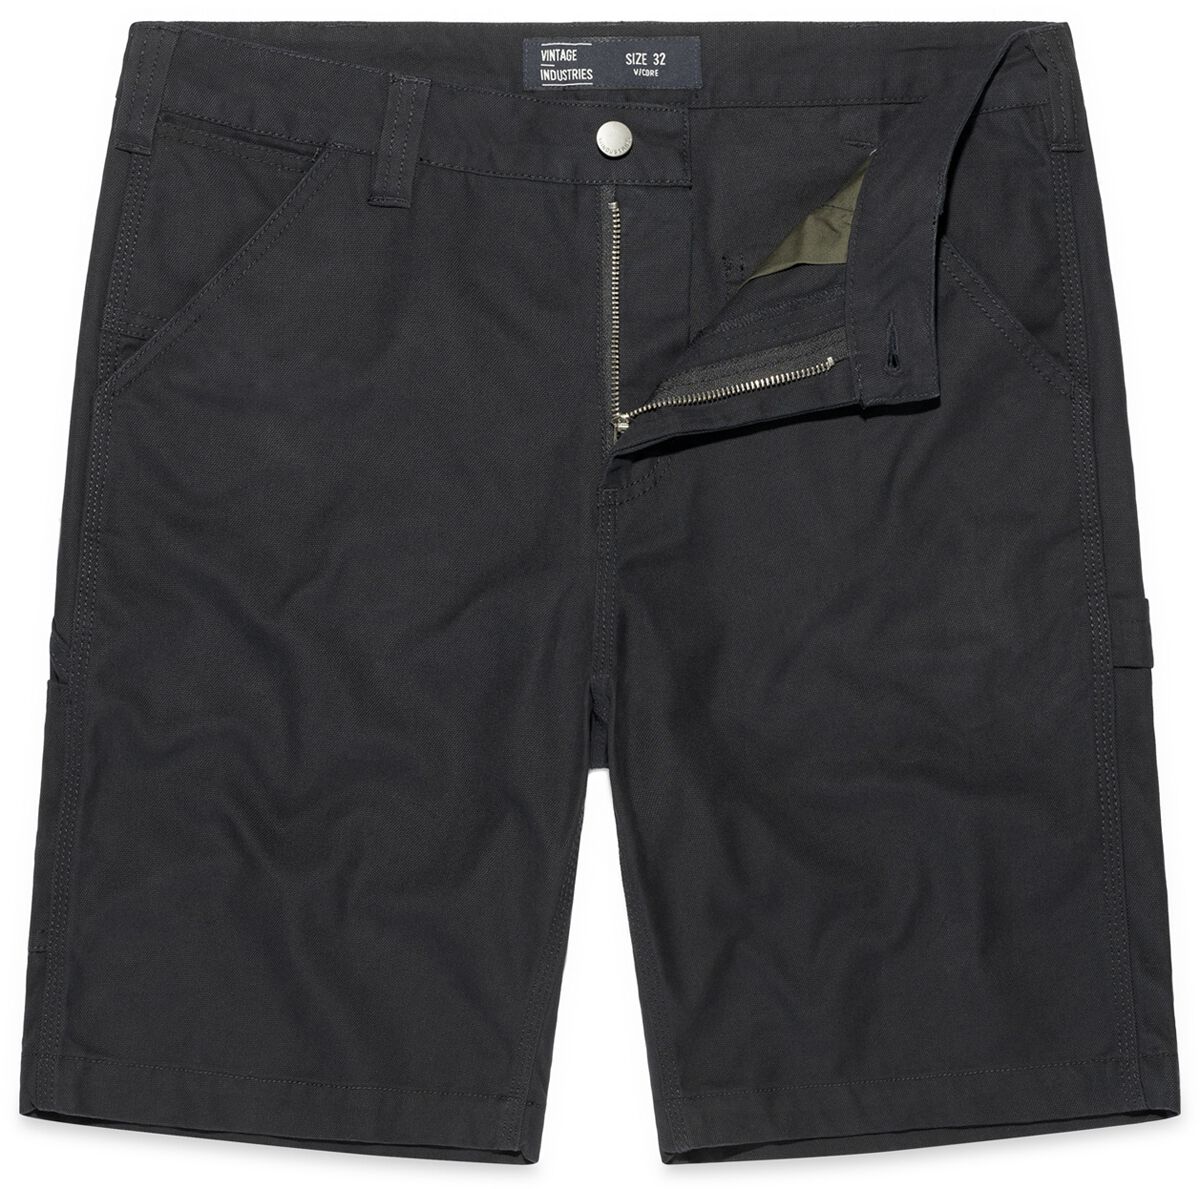 Vintage Industries Short - Dayton Shorts - 32 bis 38 - für Männer - Größe 33 - schwarz